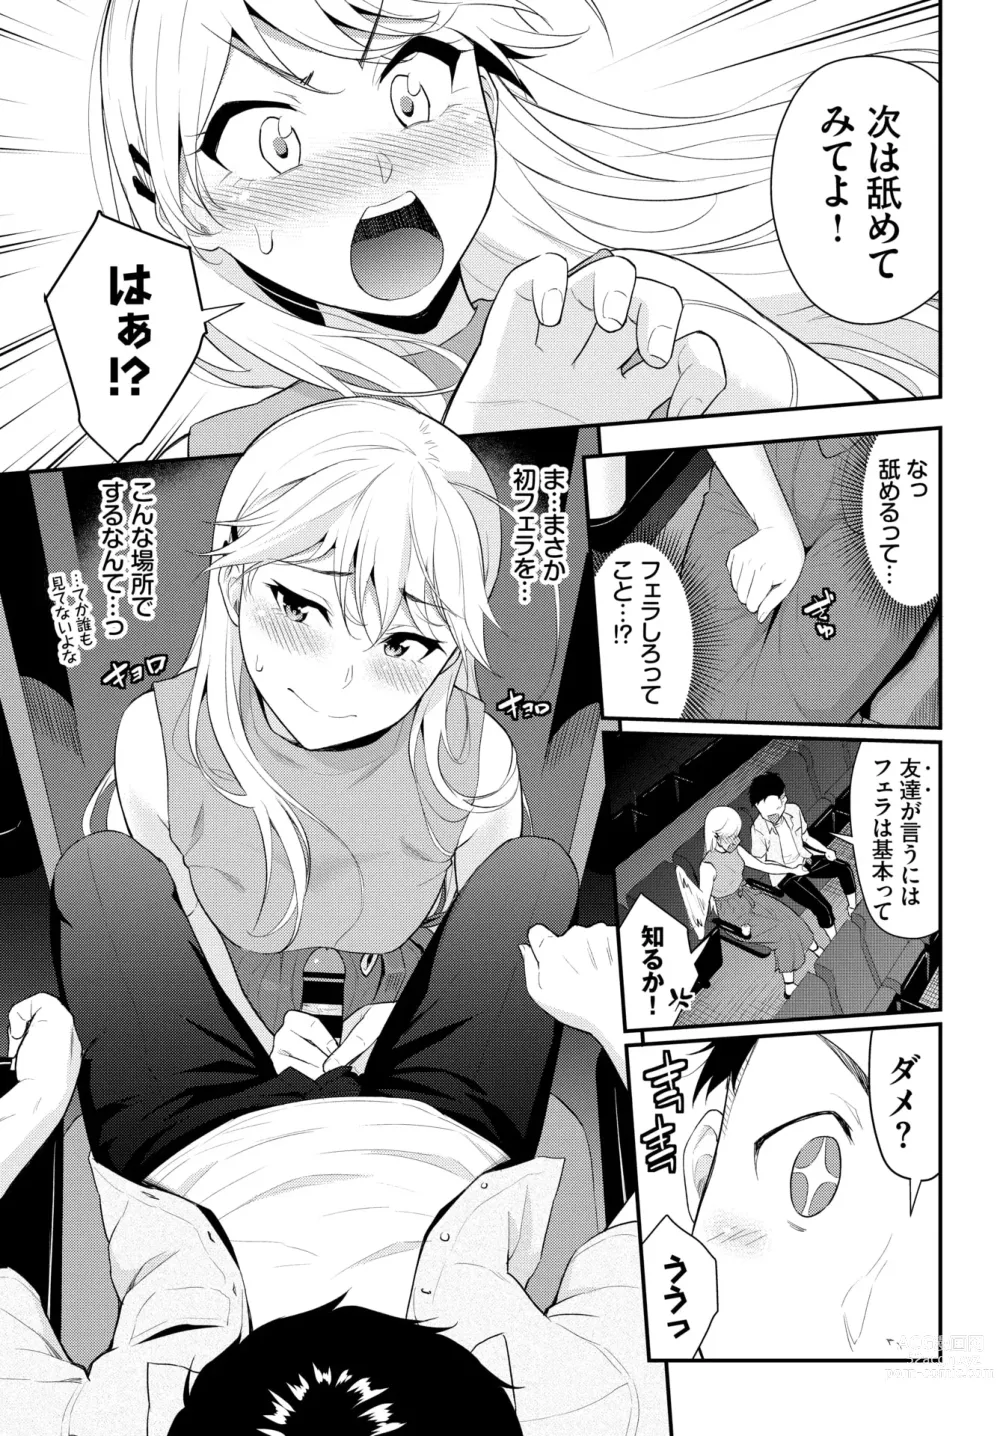 Page 7 of manga Hodad Girl